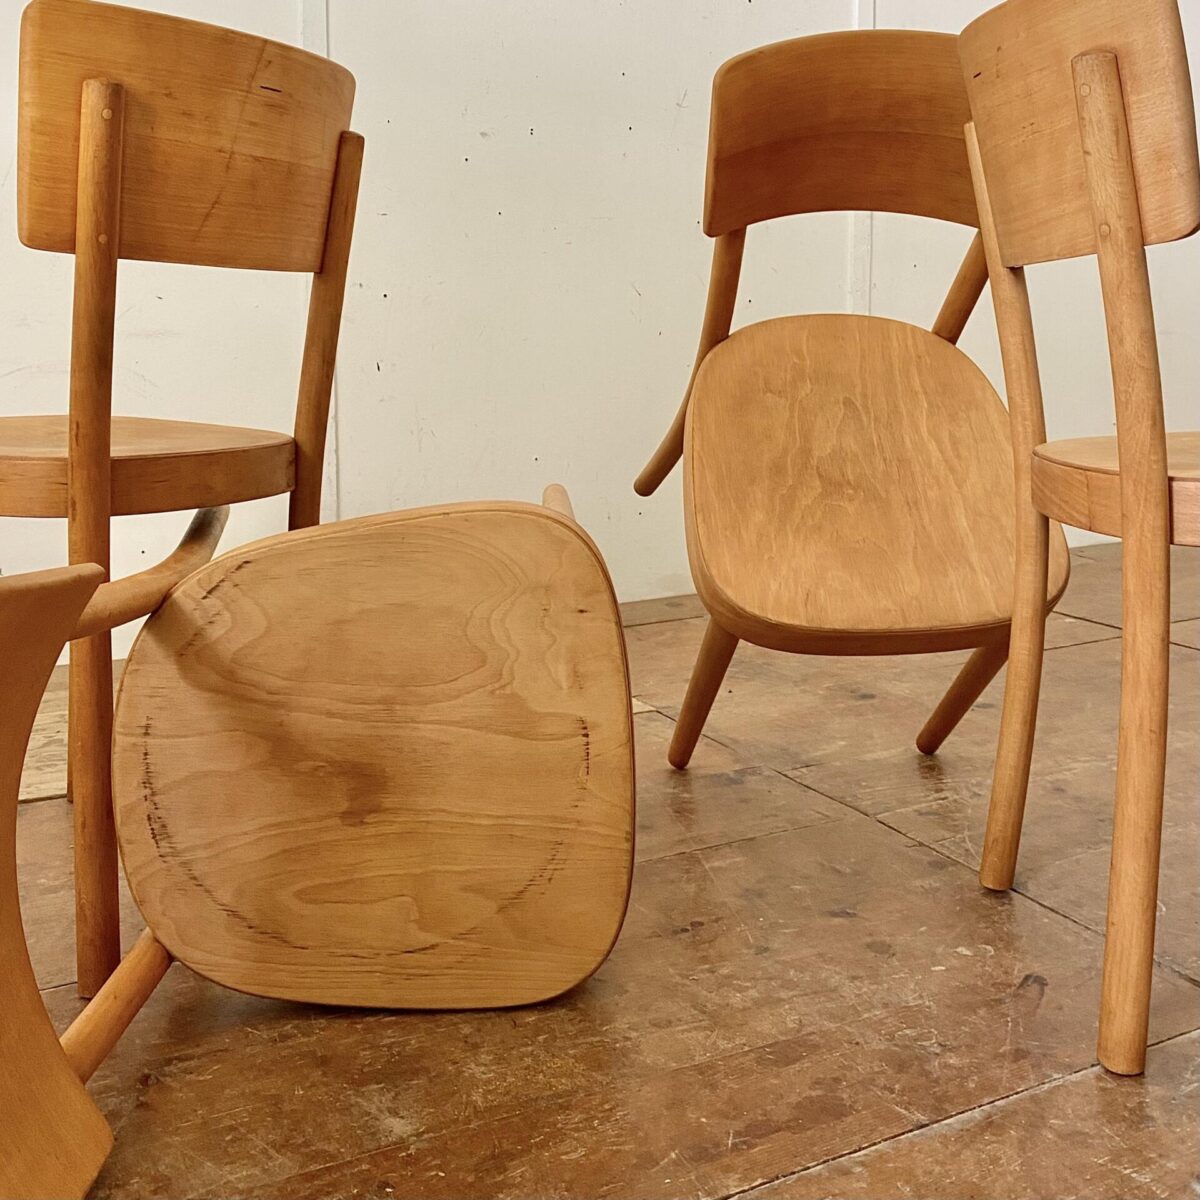 Deuxieme.shop 4er Set Horgenglarus Stühle, mit ergonomisch hohem Rücken, und Rundbeinen. Horgen Glarus Safran